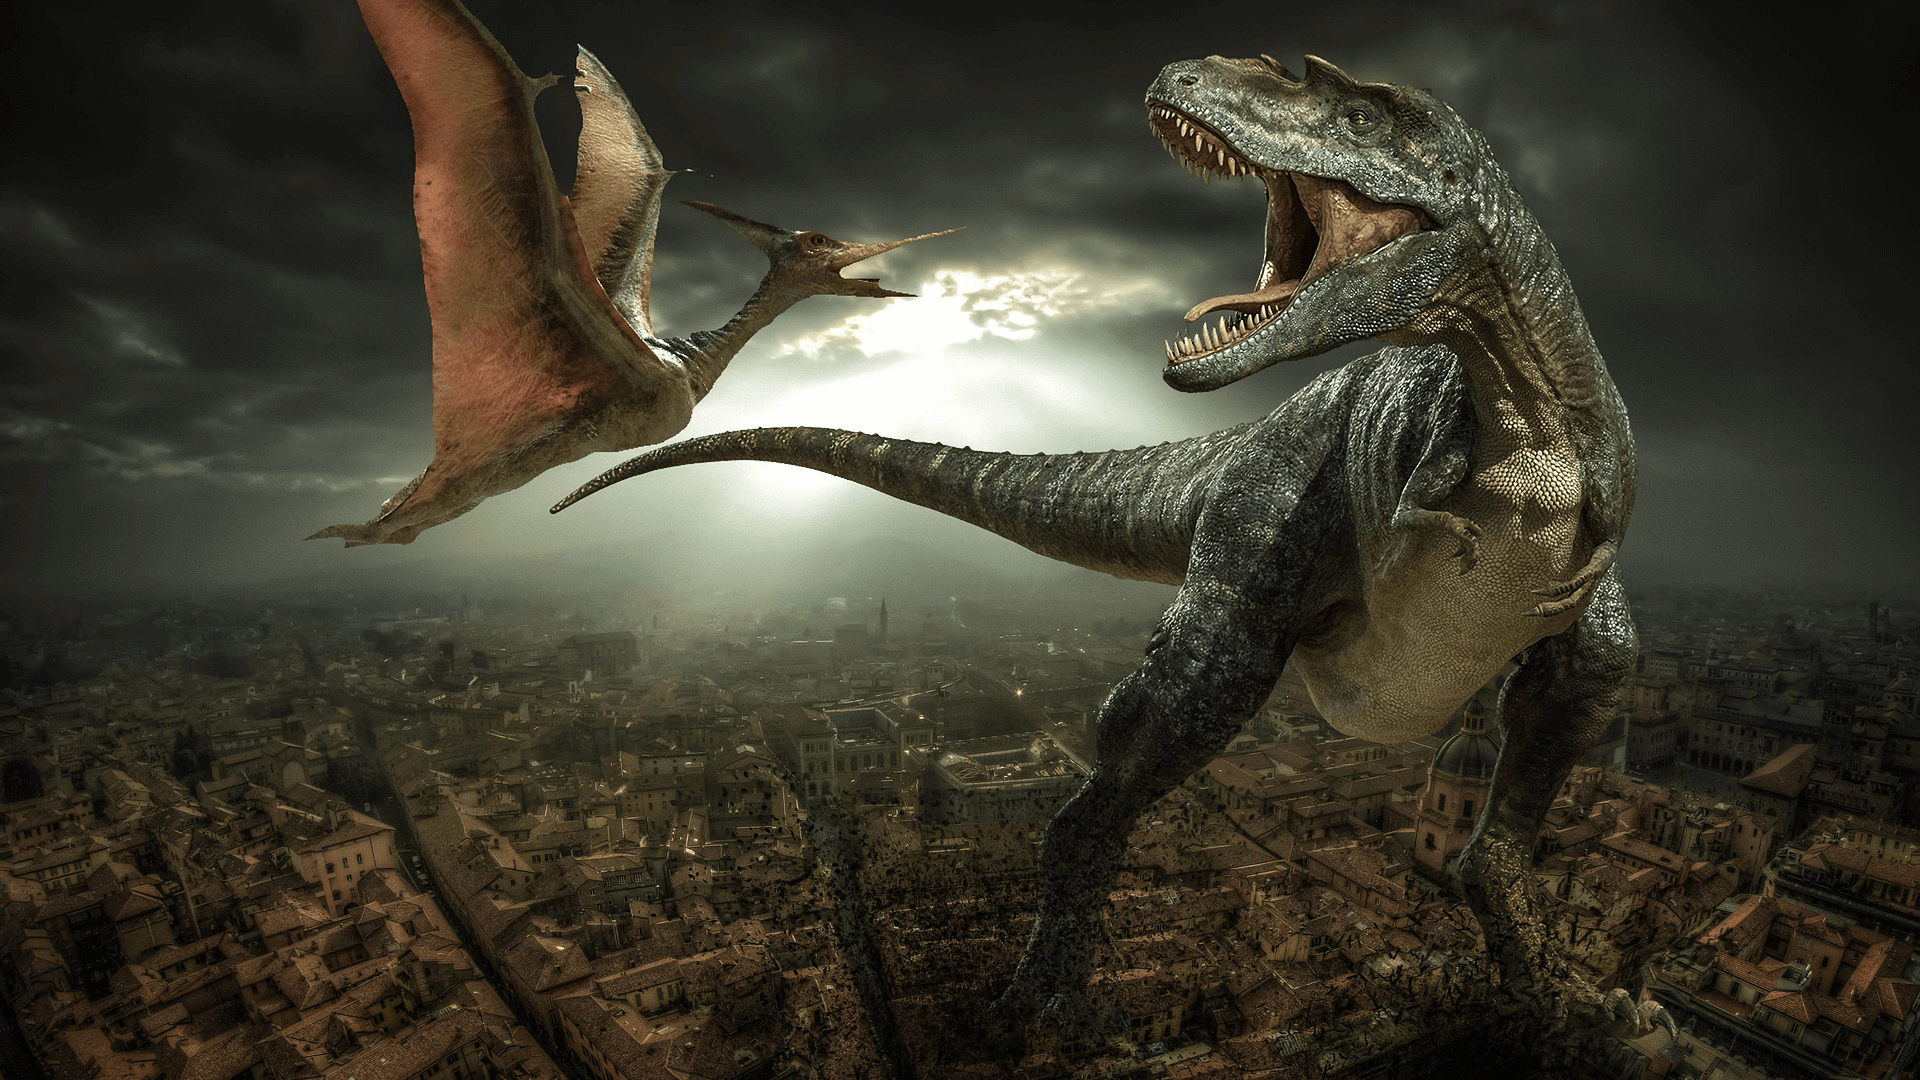 Около 230 миллионов лет назад, первые динозавры эволюционировали из популяции архозавров Archosauria, которые разделяли планету с множеством других рептилий